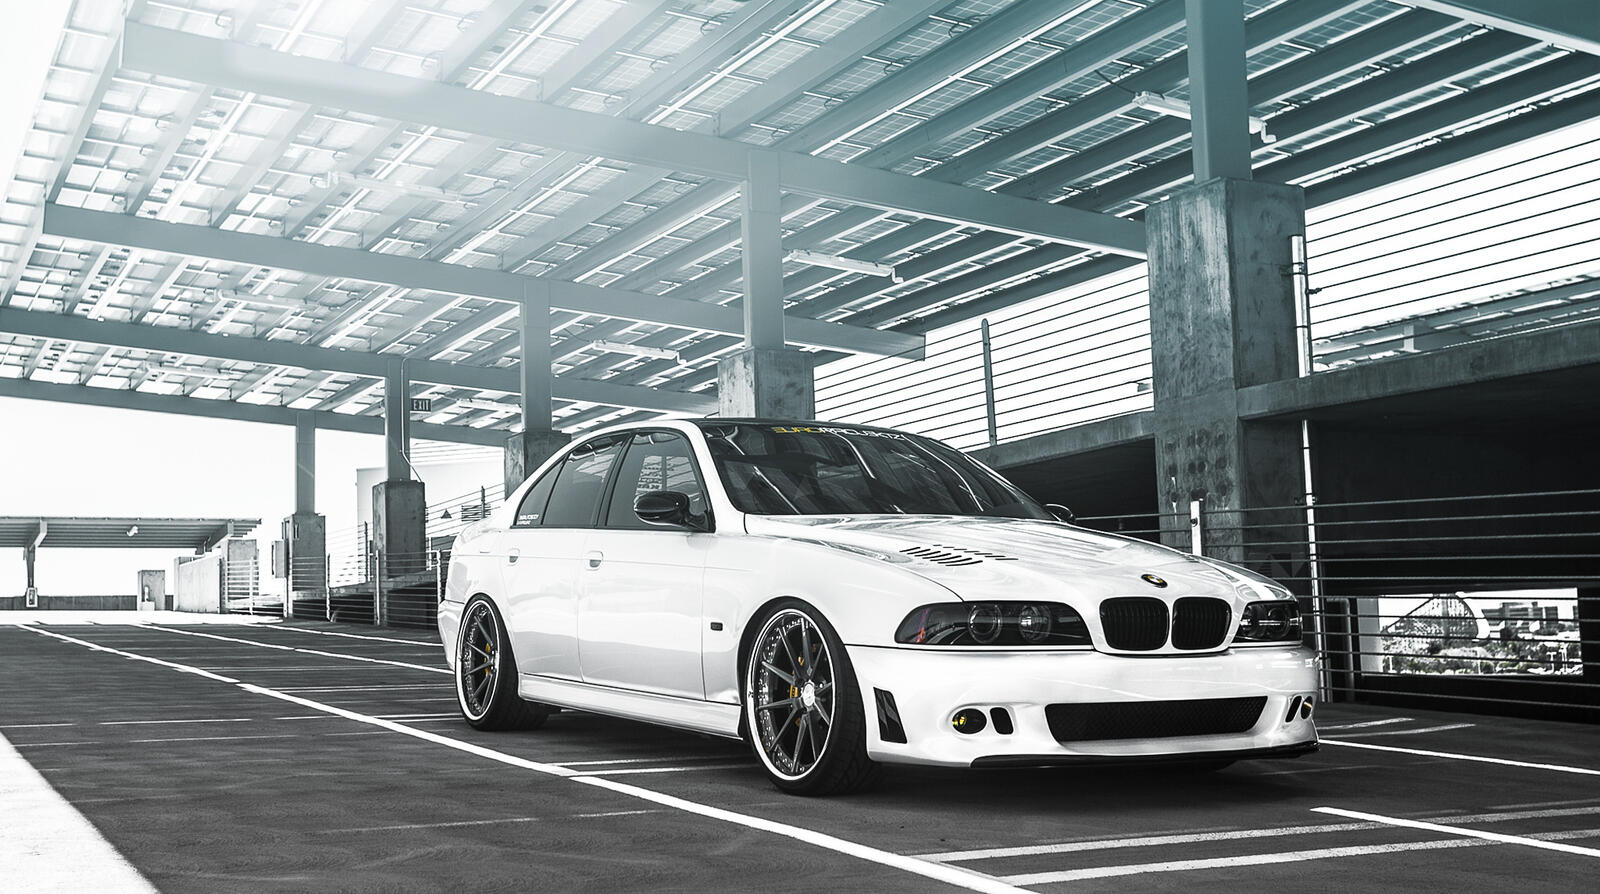 Бесплатное фото BMW M5 белого цвета